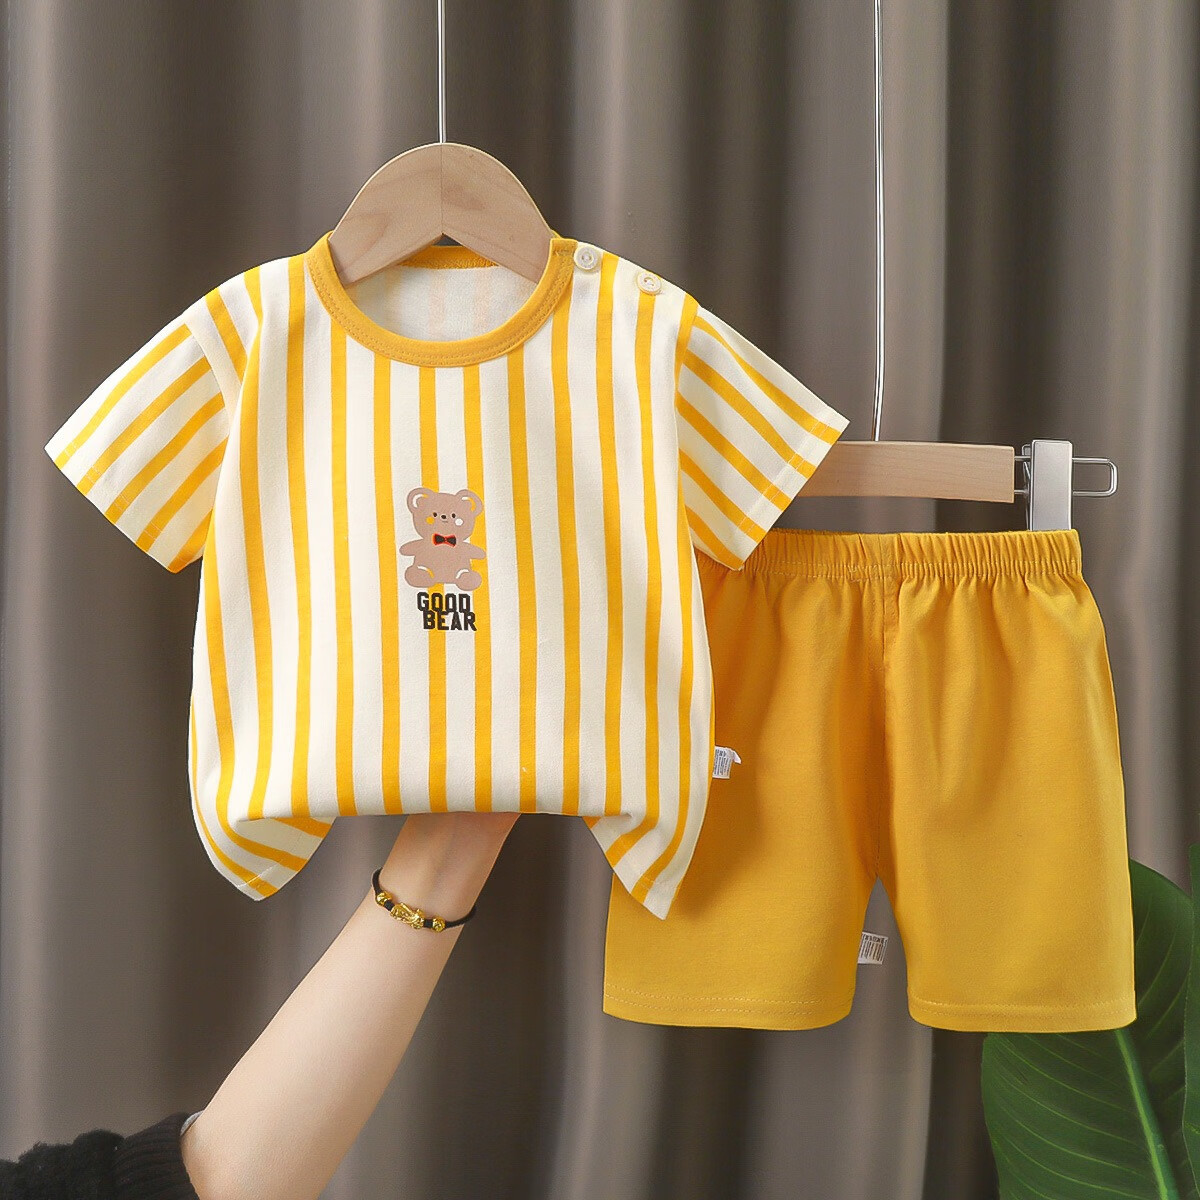 贝婴初儿童短袖套装夏季纯棉男童衣服薄款女童t恤夏装服装宝宝童装 B129 73cm